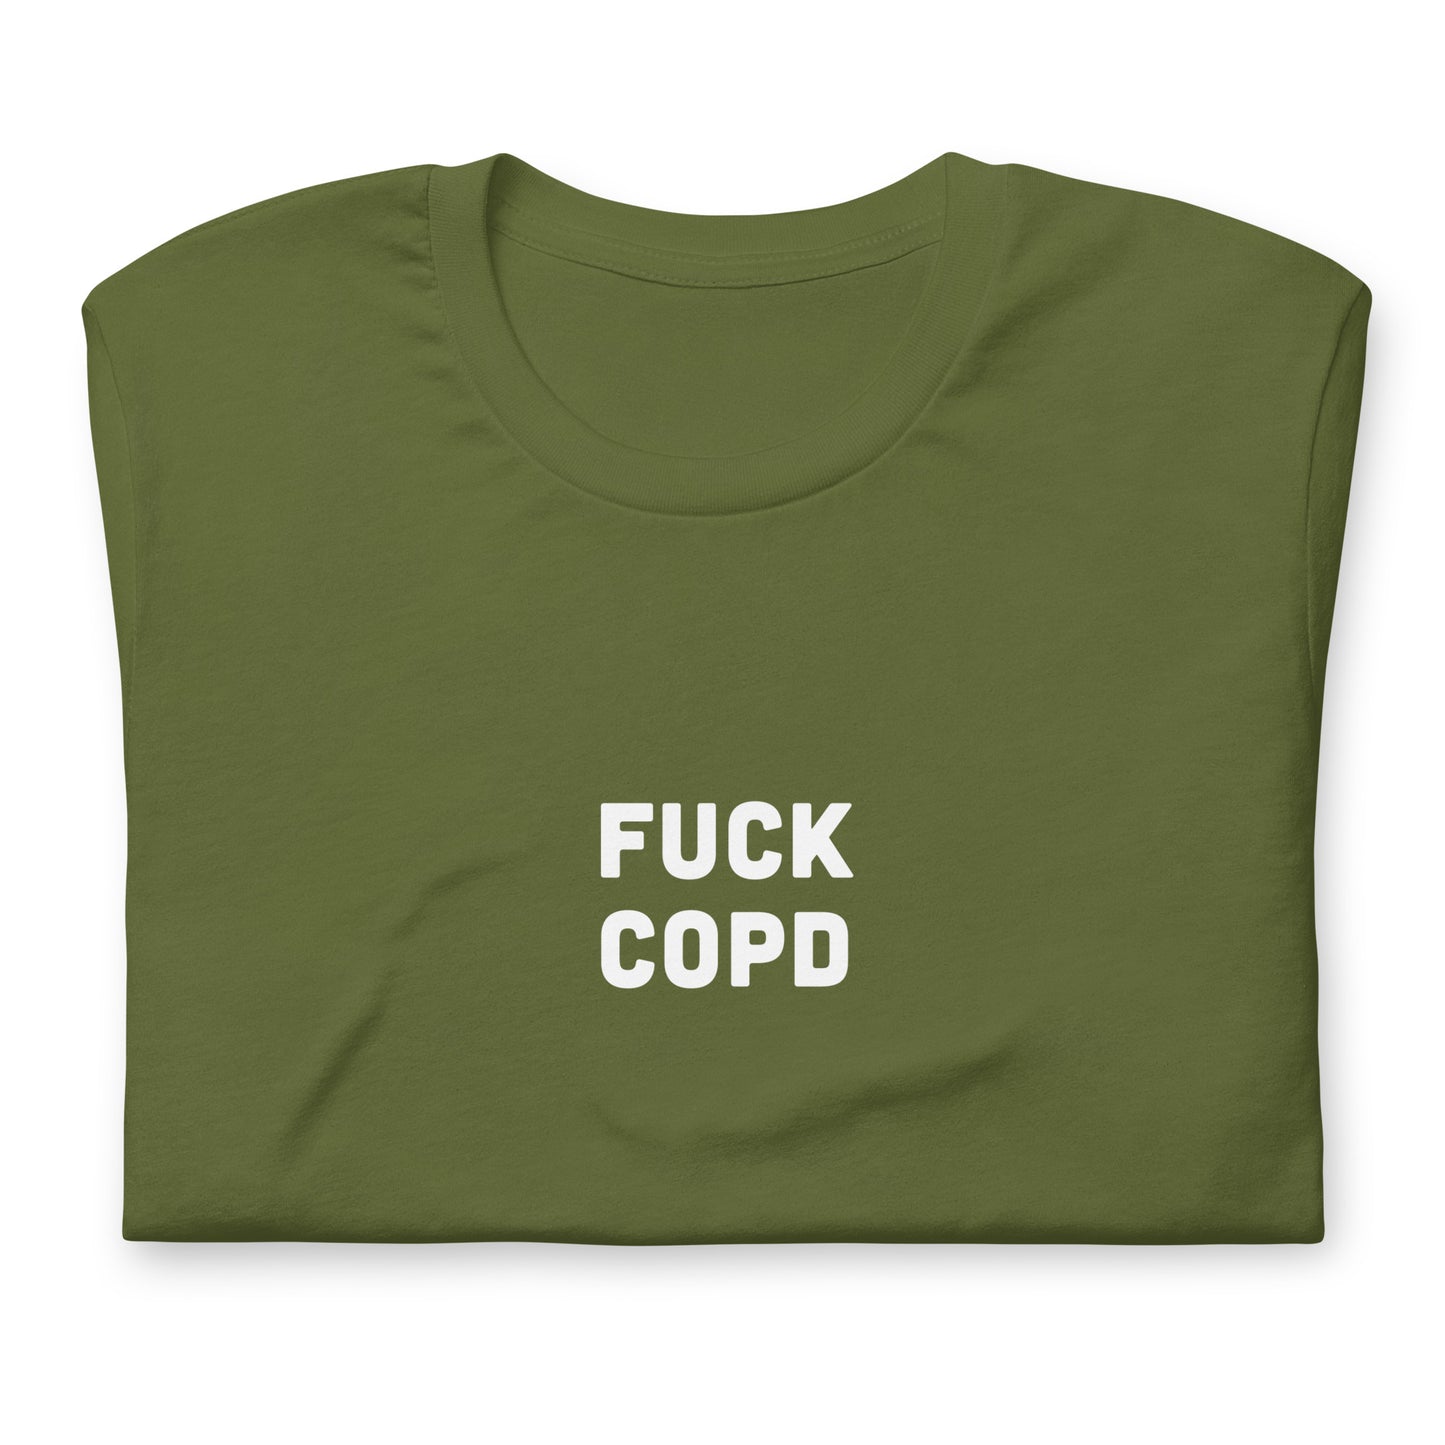 Fuck Copd T-Shirt Size 2XL Color Black